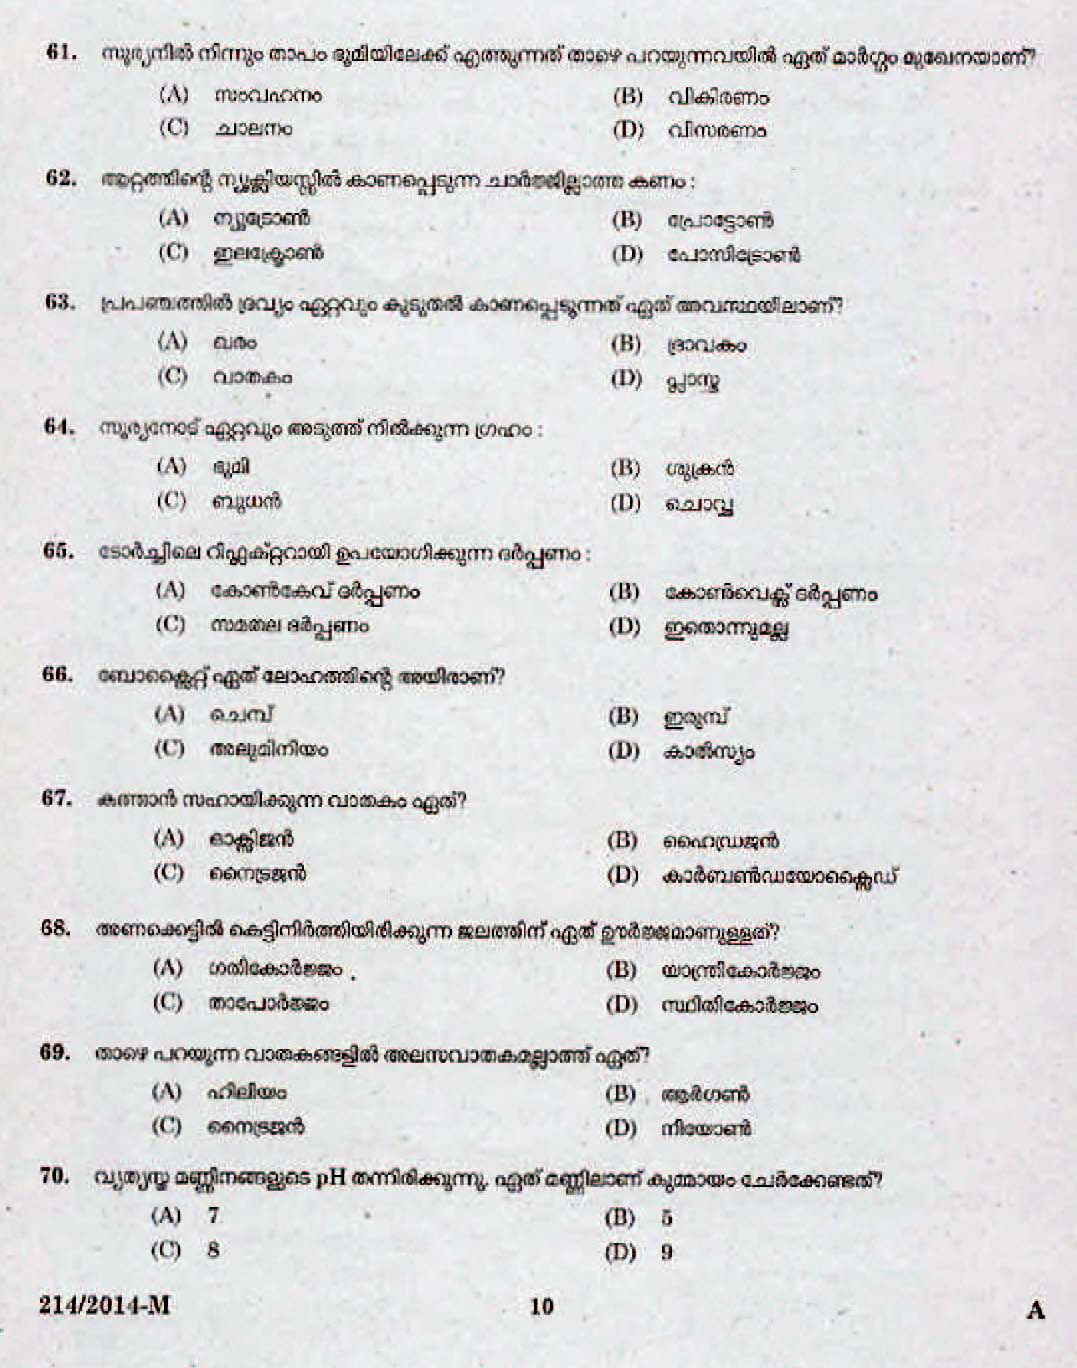 Kerala Last Grade Servants Exam 2014 Question Paper Code 2142014 M 8